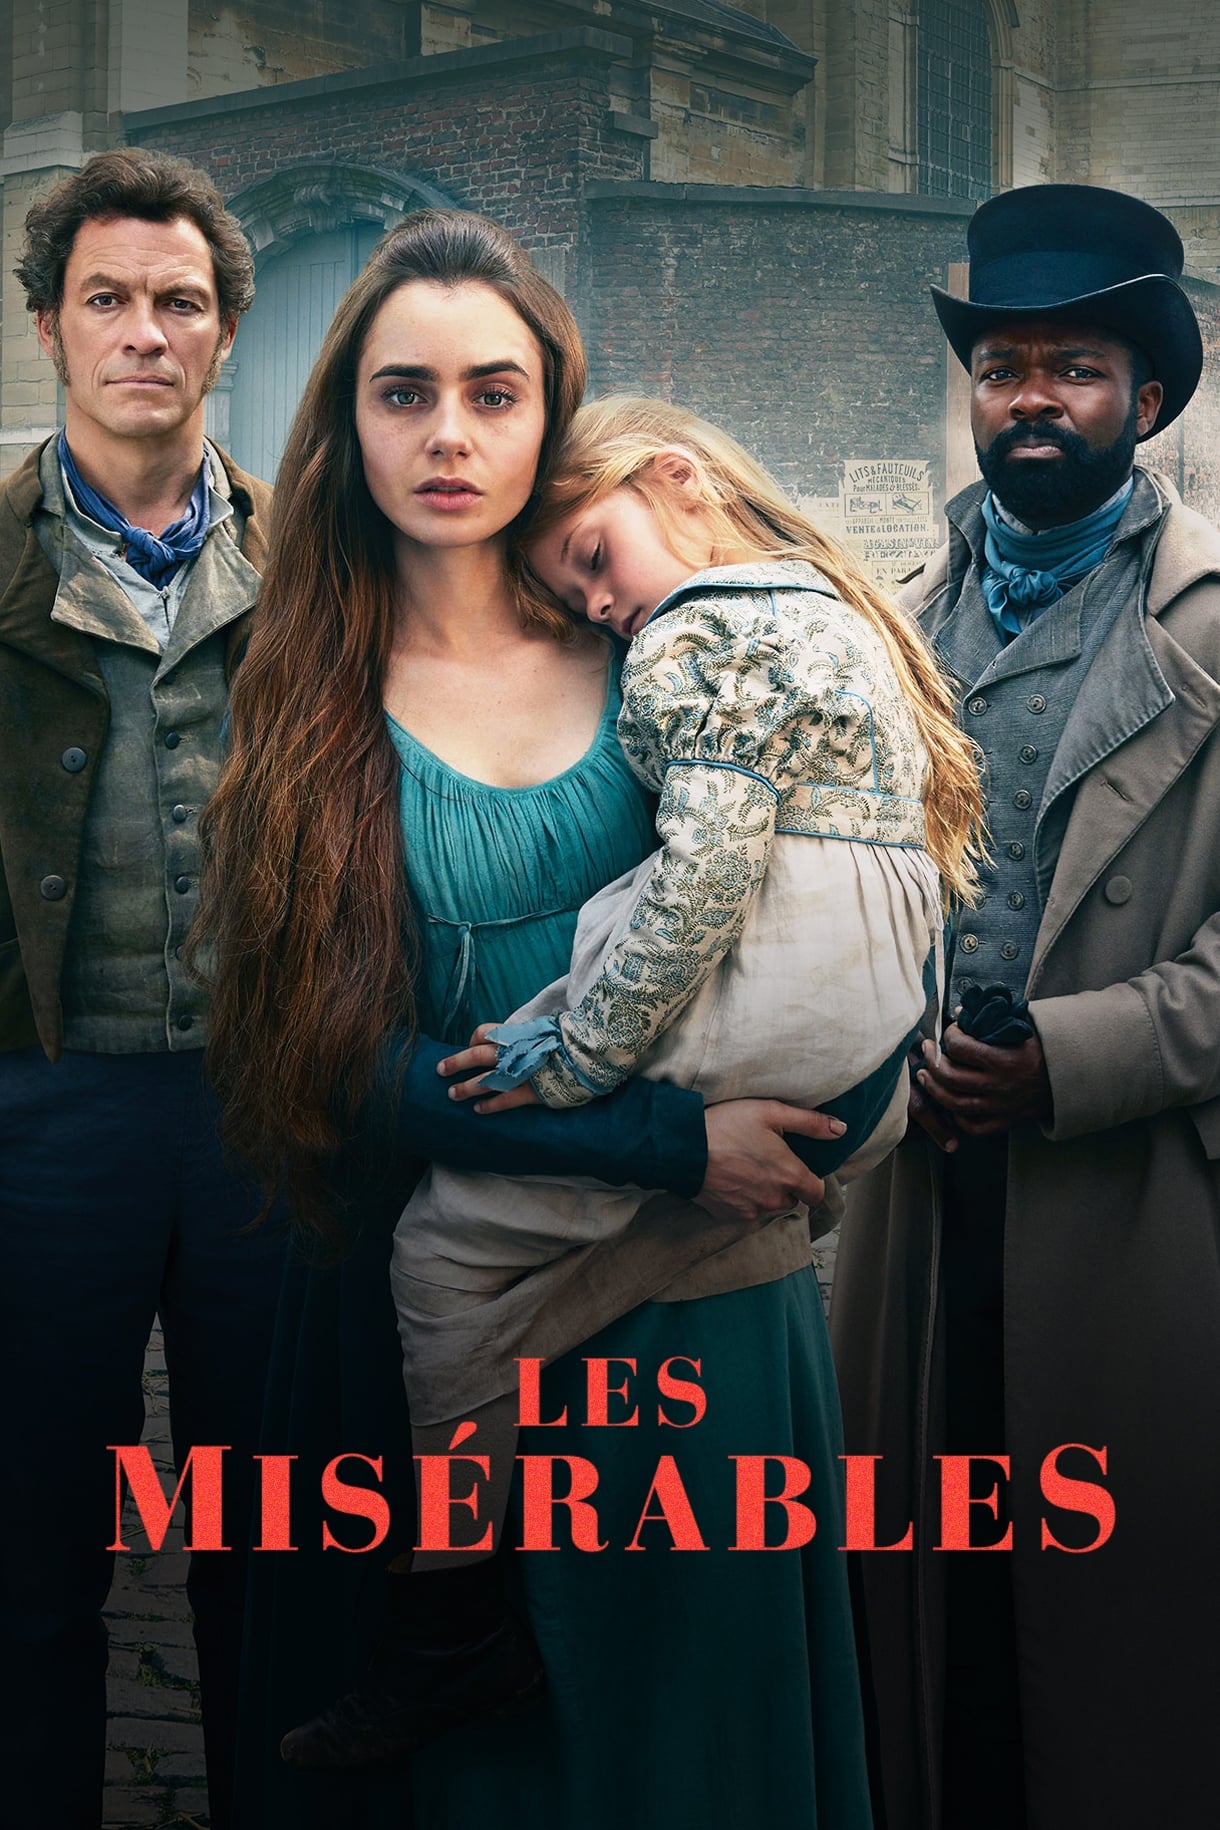 Les Misérables TV Shows About Child Abuse